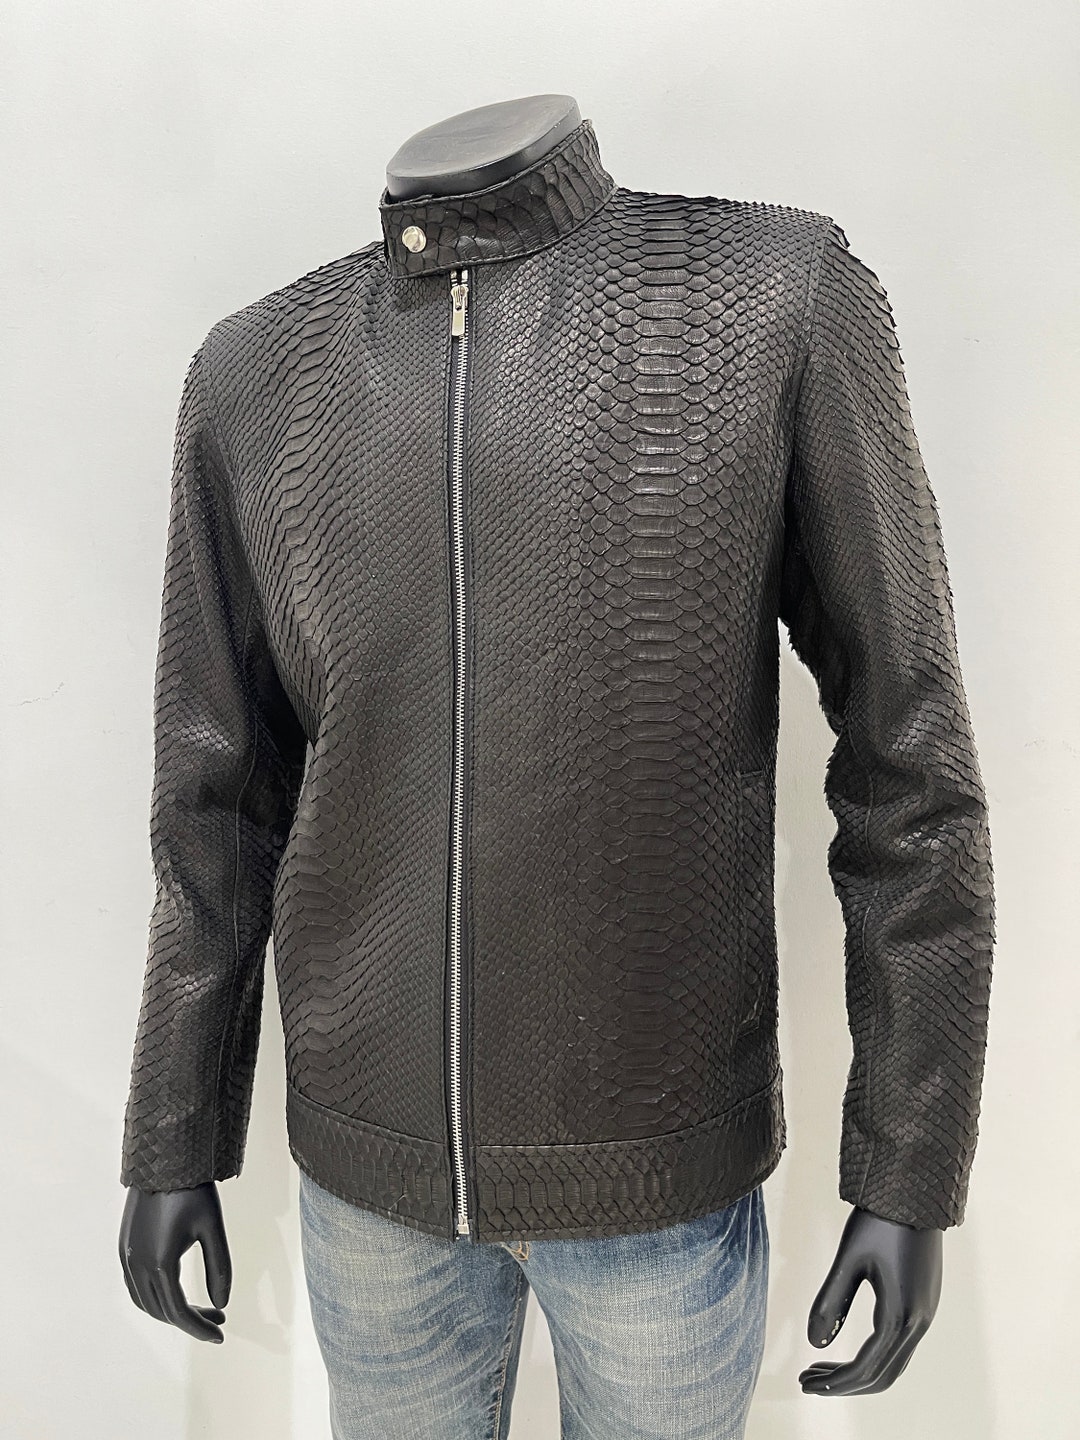 Snakeskin Jacket for Man Black Python Leather Jacket Natural - Etsy